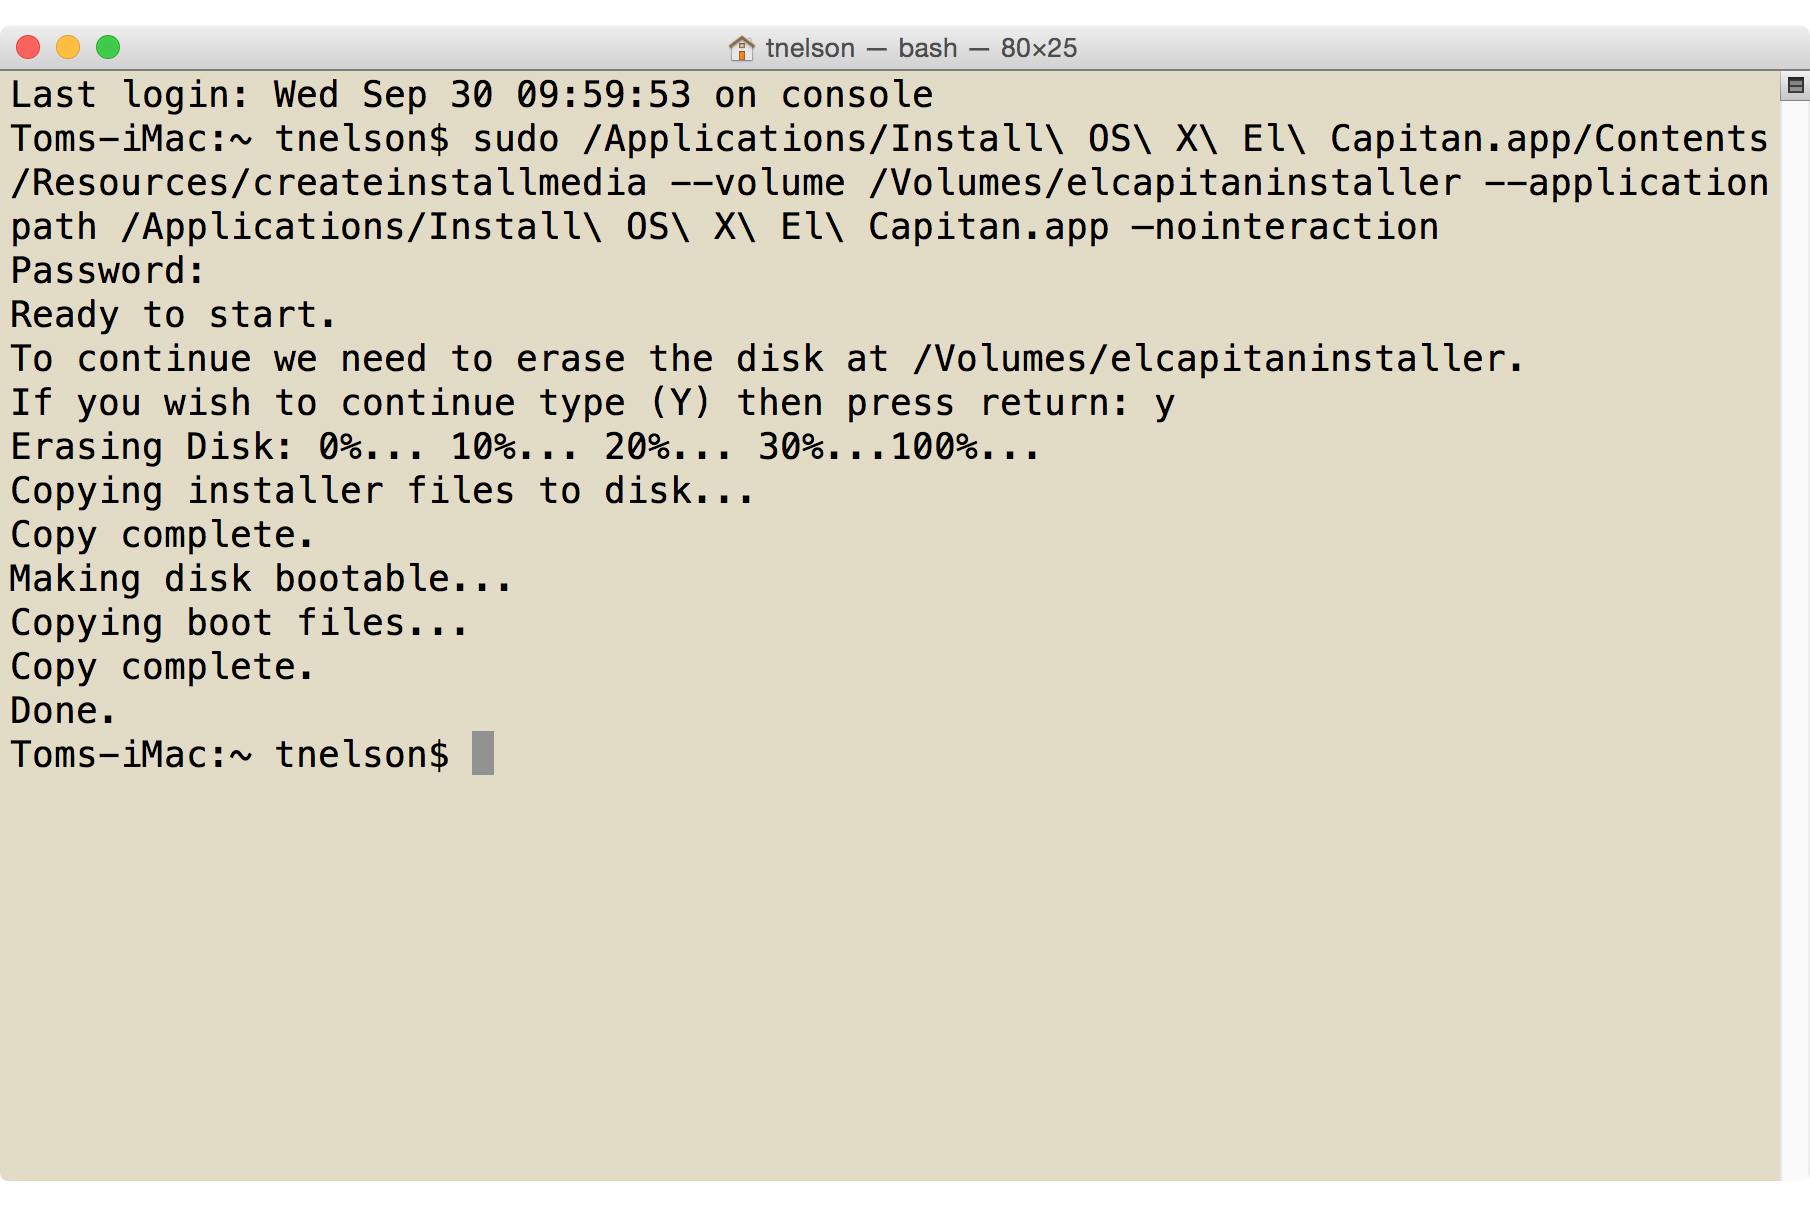 Comando de terminal para criar unidade flash USB inicializável do OS X El Capitan